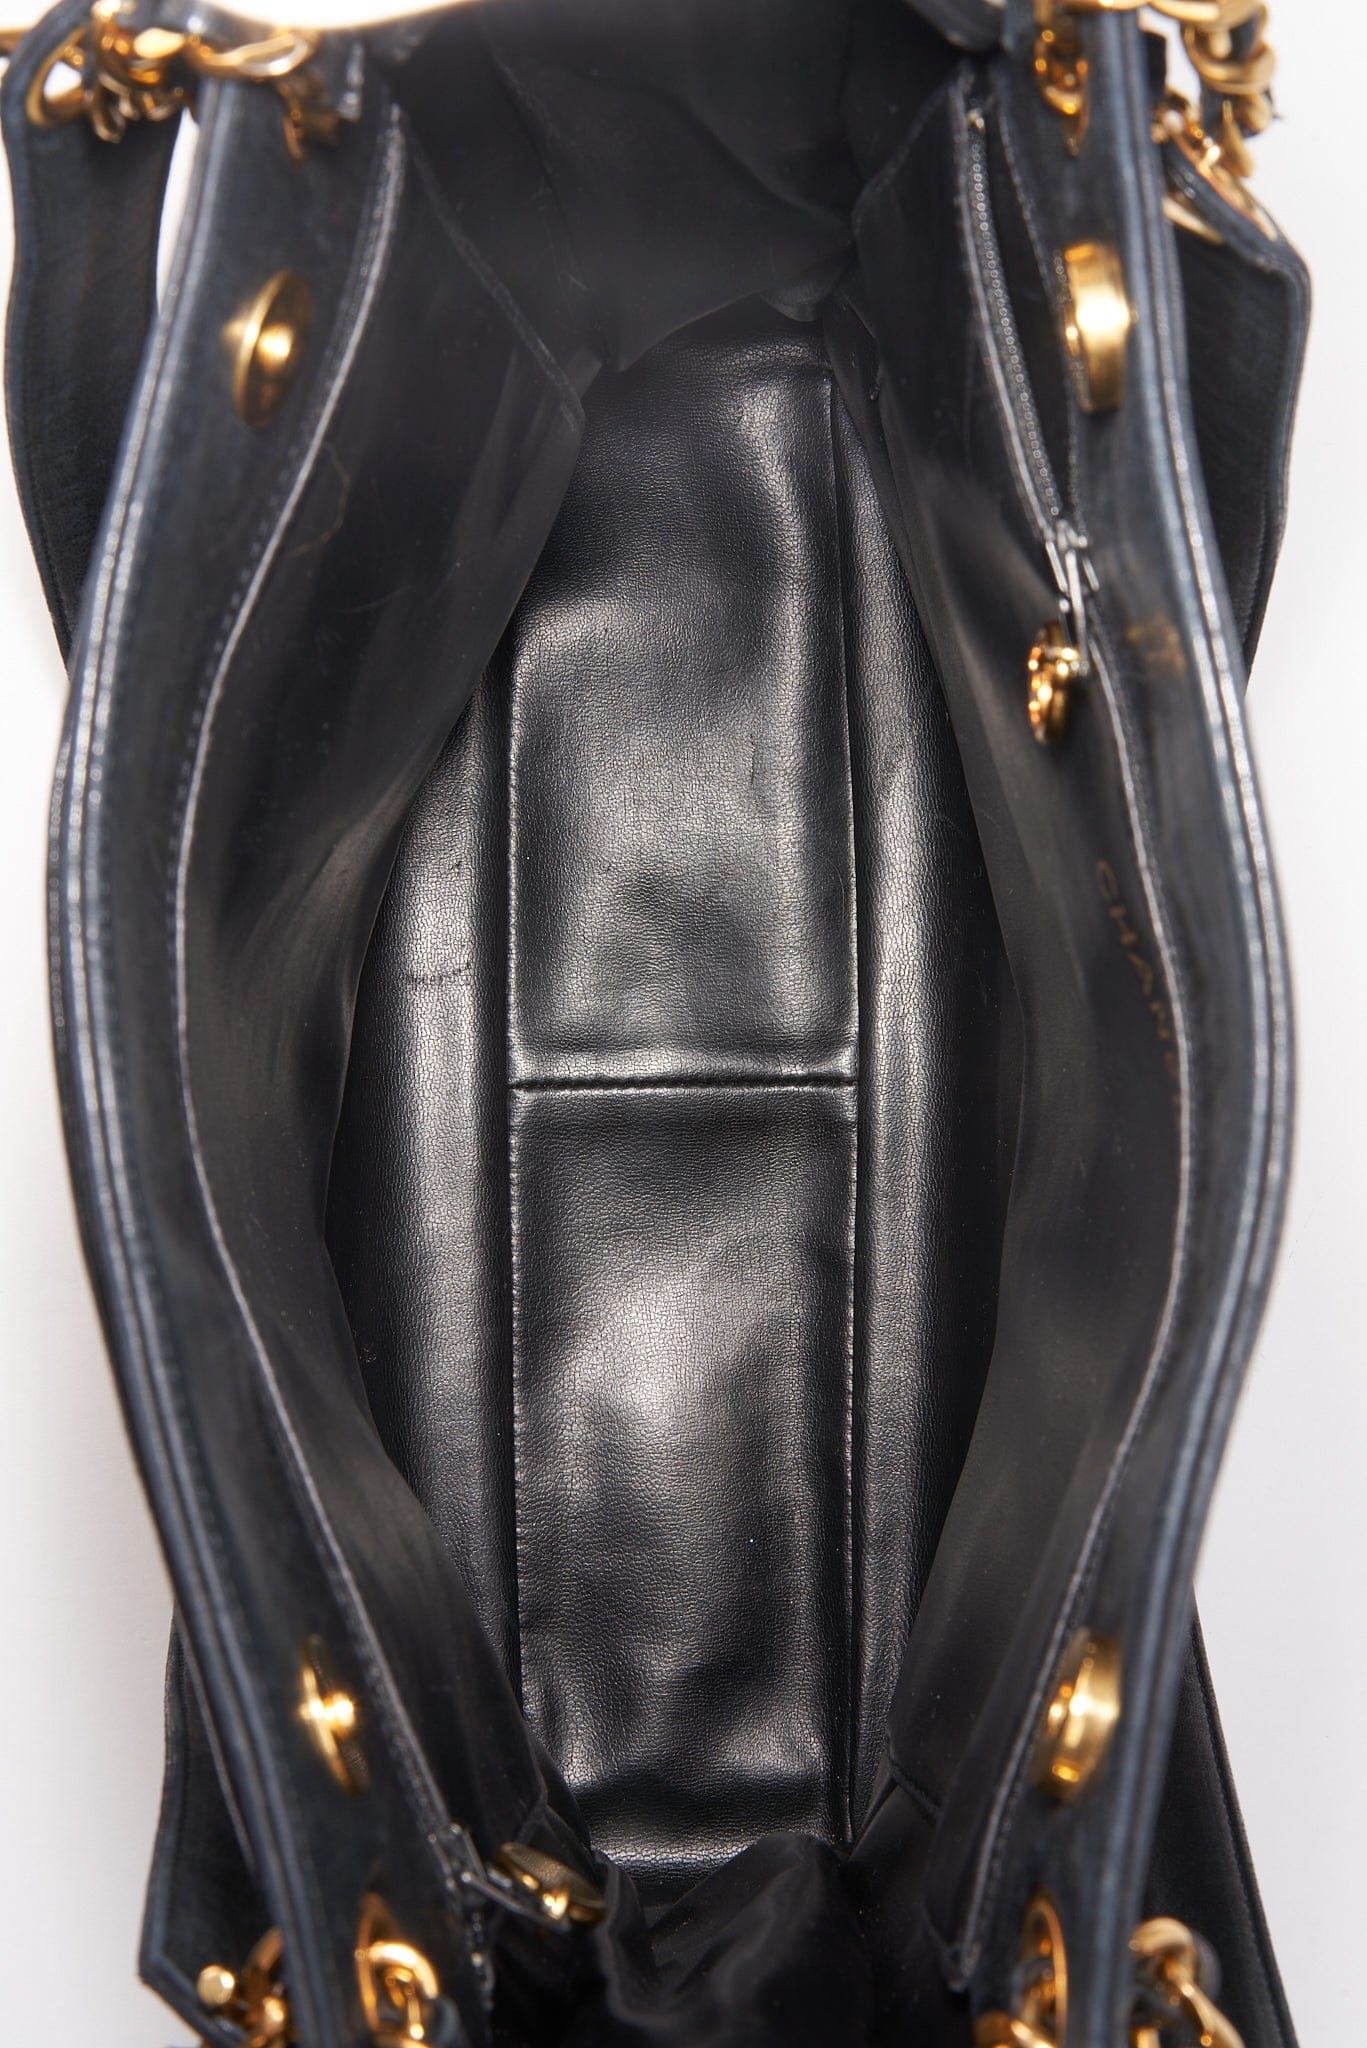 Vintage Chanel Black Leather Tote Bag – The Hosta